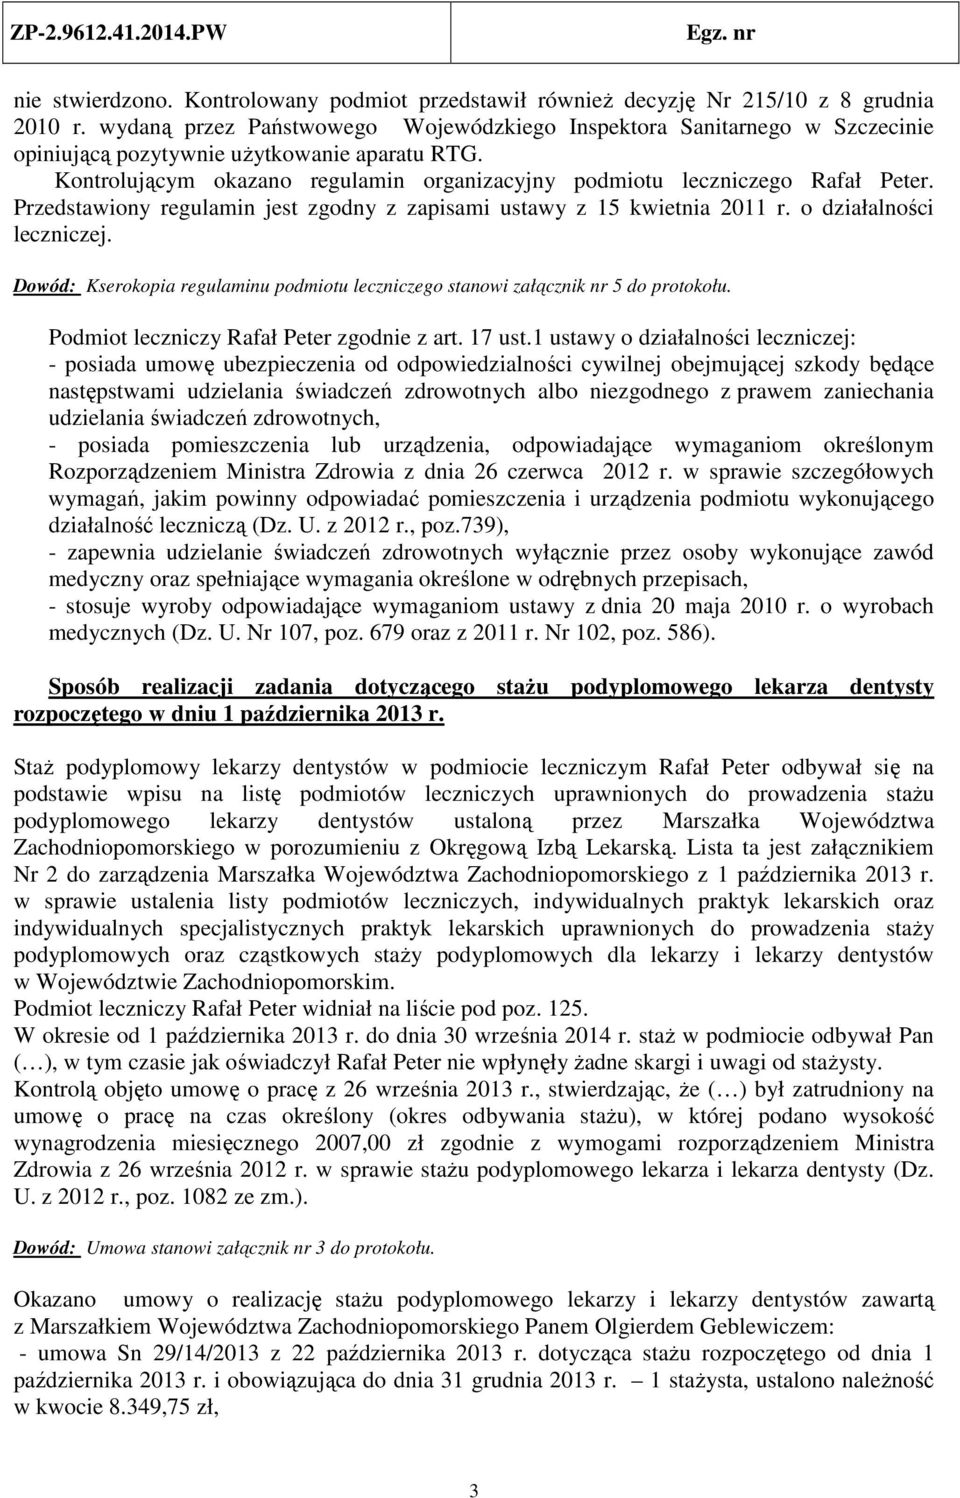 Kontrolującym okazano regulamin organizacyjny podmiotu leczniczego Rafał Peter. Przedstawiony regulamin jest zgodny z zapisami ustawy z 15 kwietnia 2011 r. o działalności leczniczej.